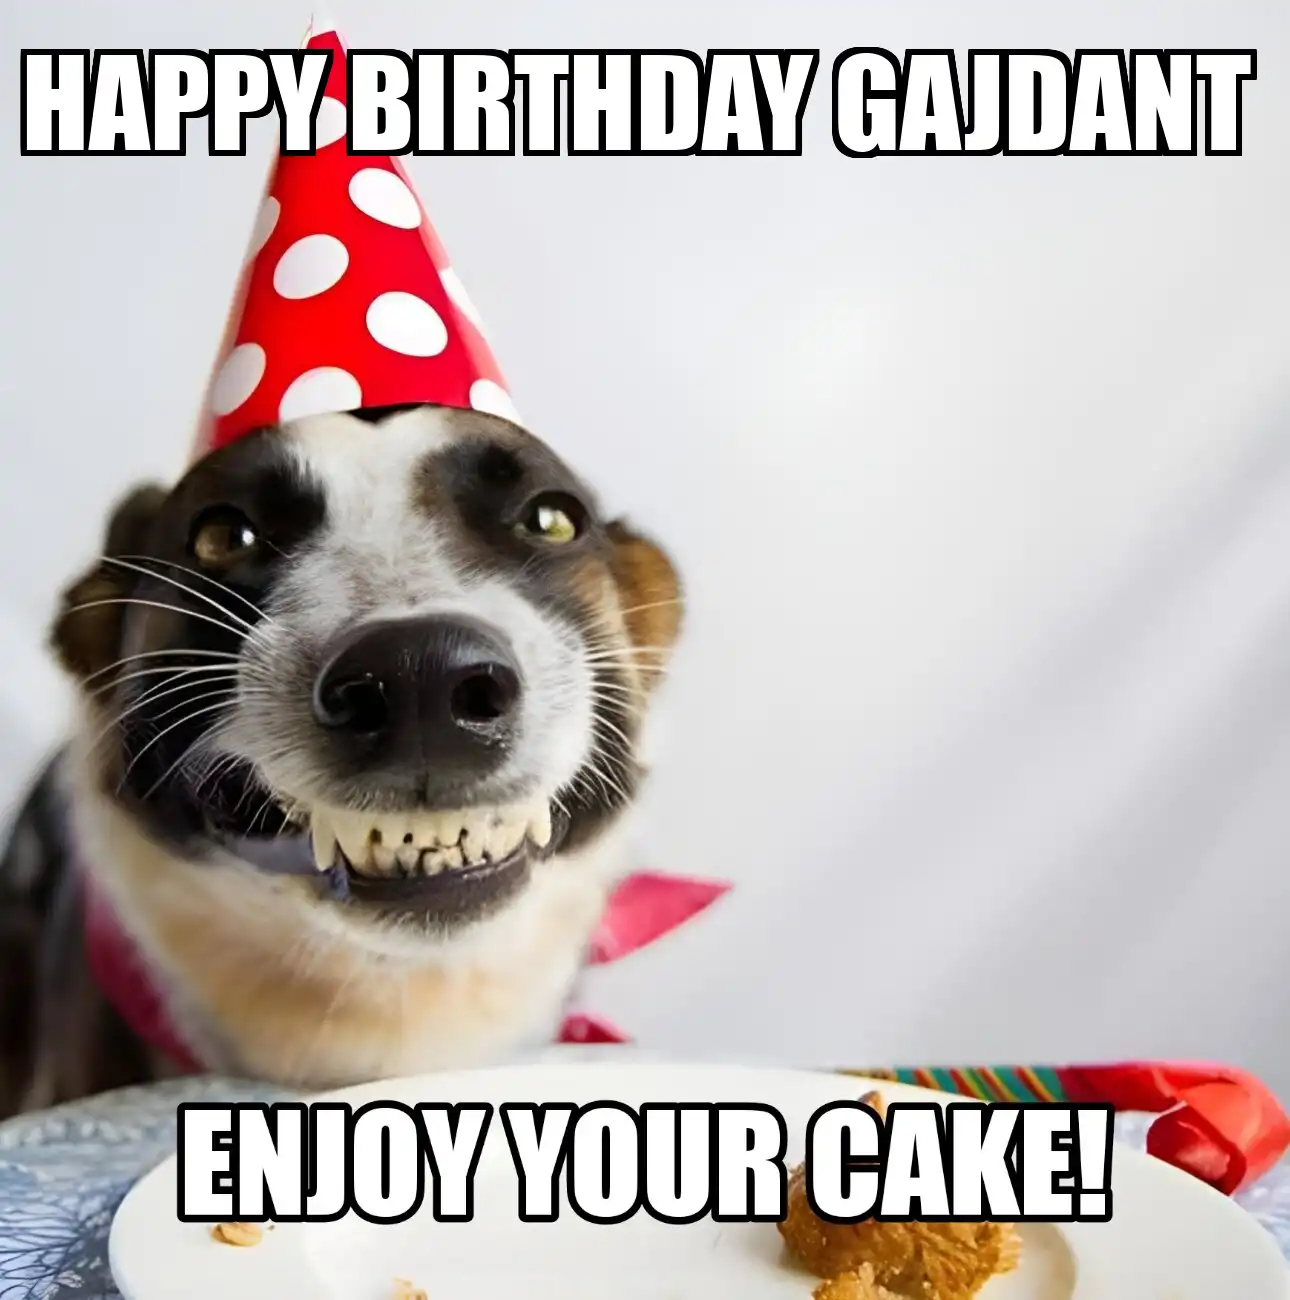 Happy Birthday Gajdant Enjoy Your Cake Dog Meme